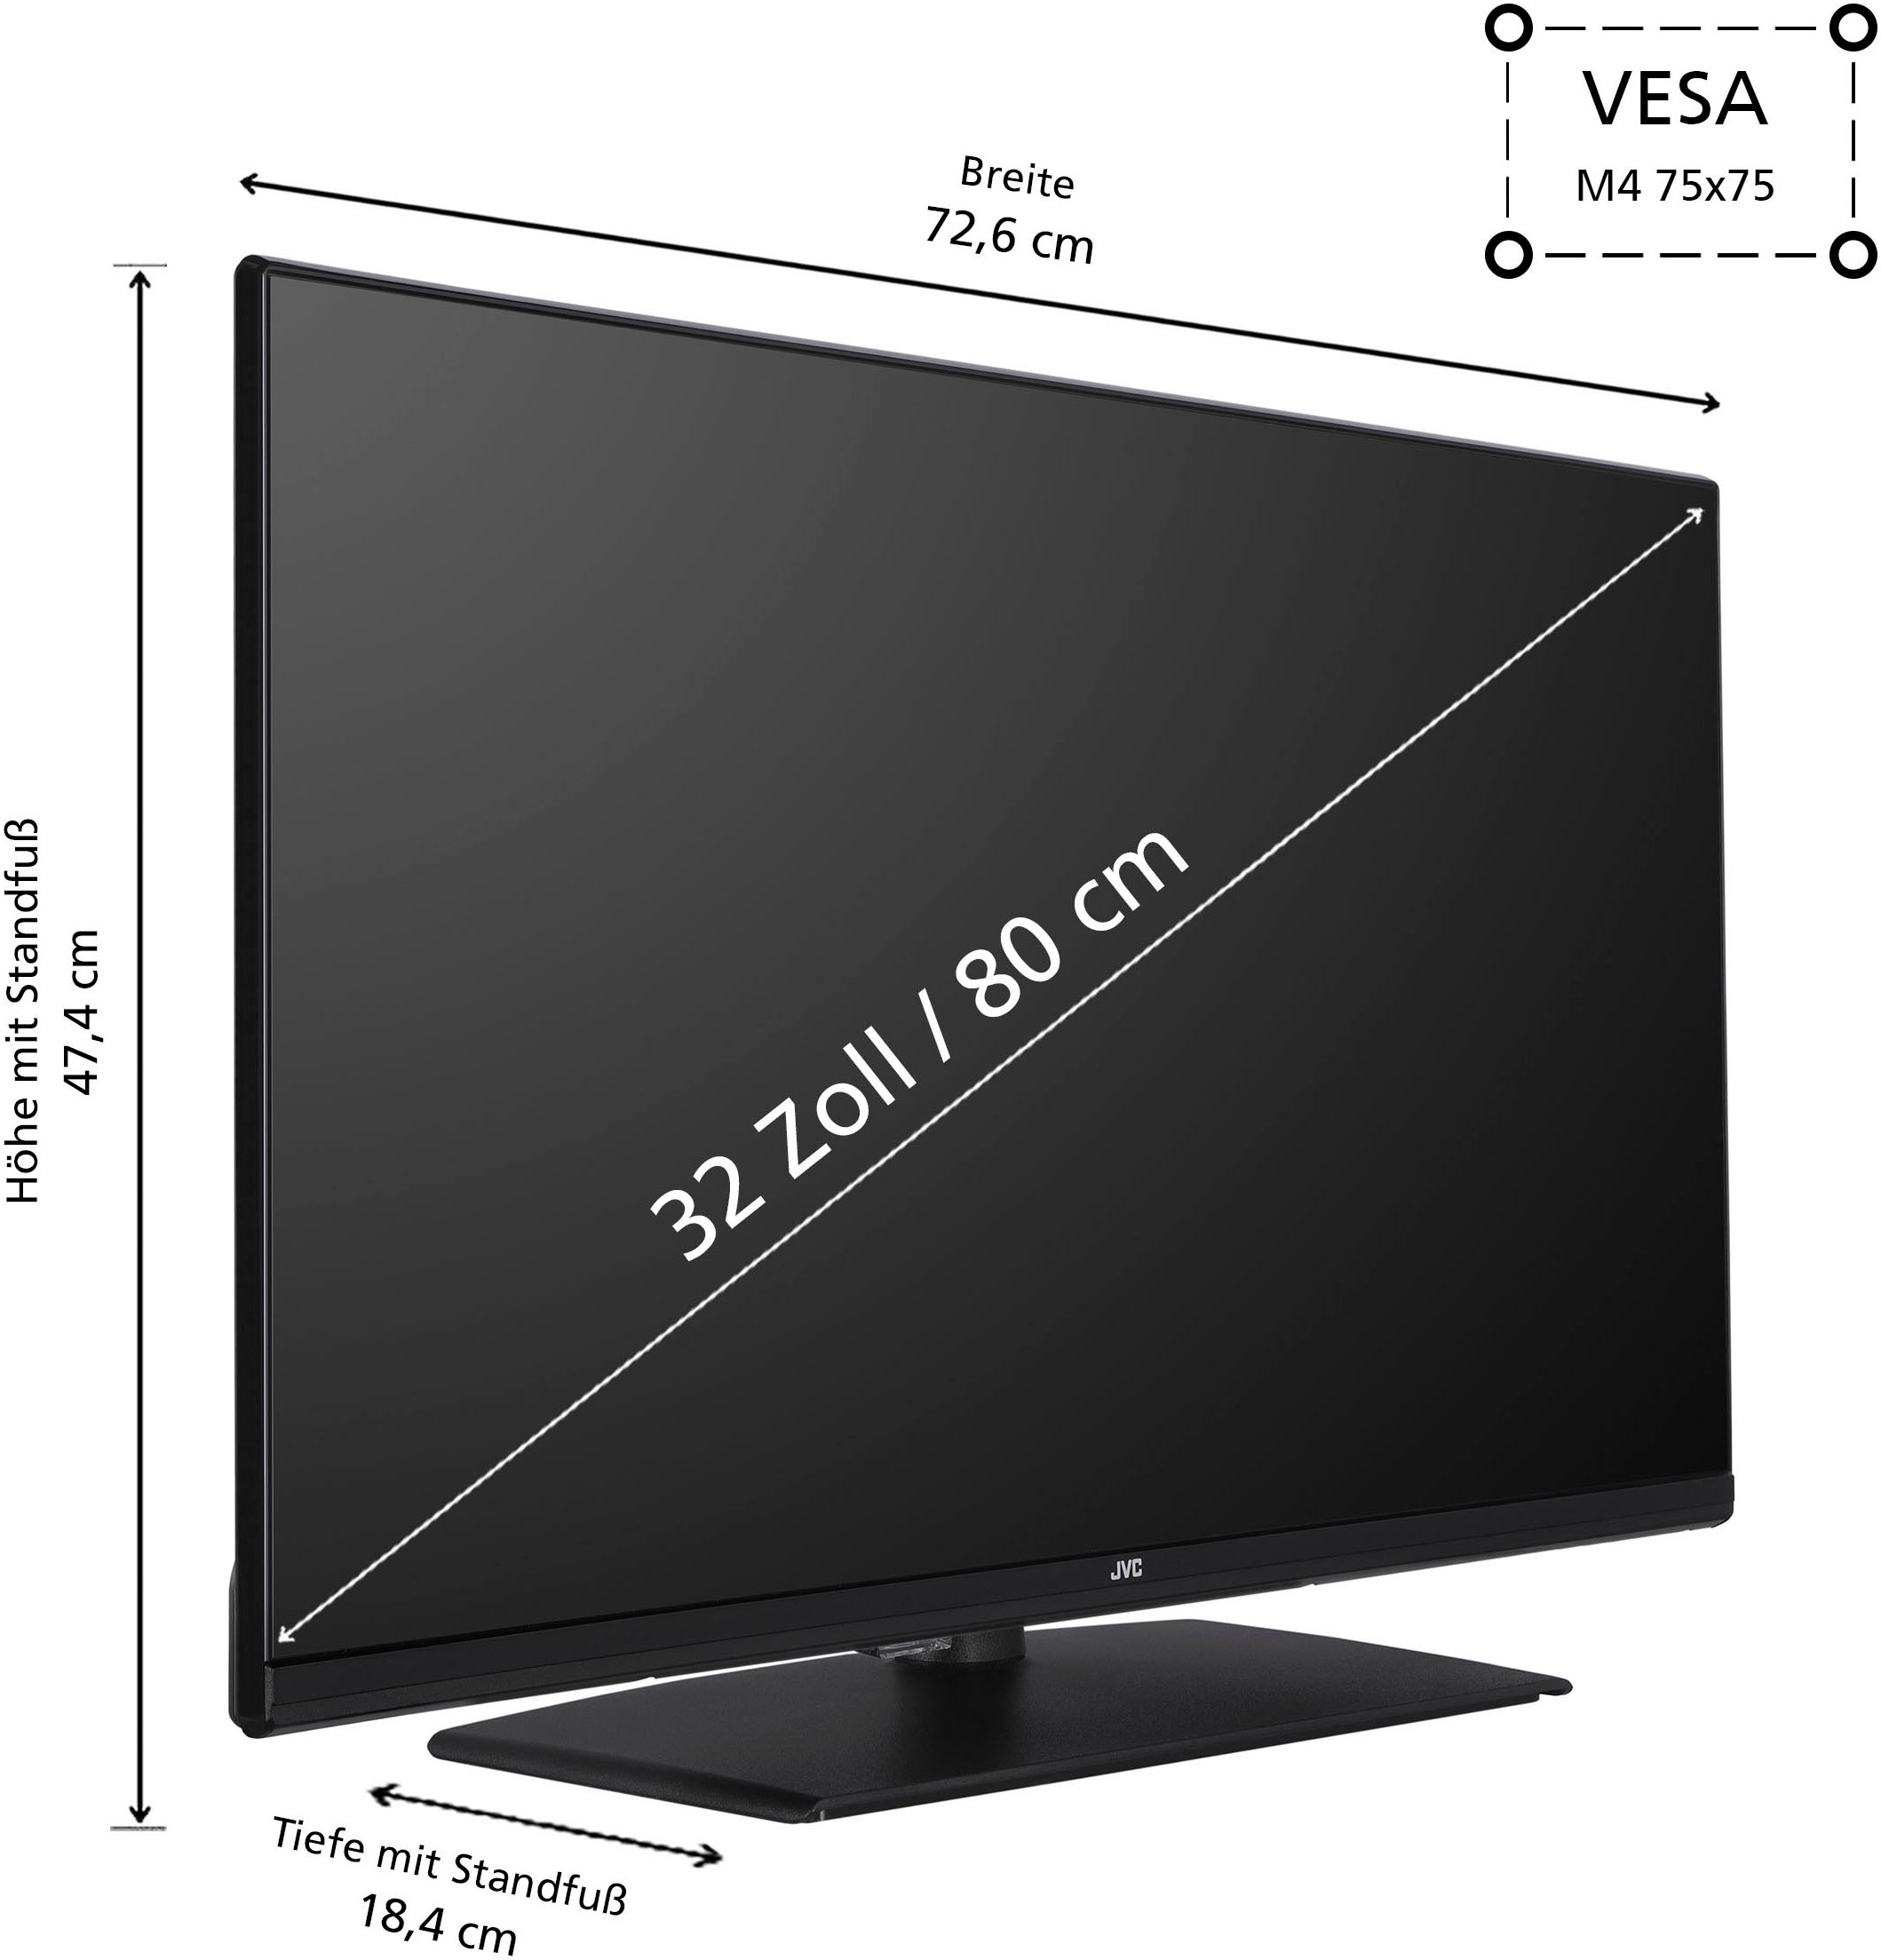 JVC LED-Fernseher, 80 cm/32 Zoll, Full HD, Smart-TV